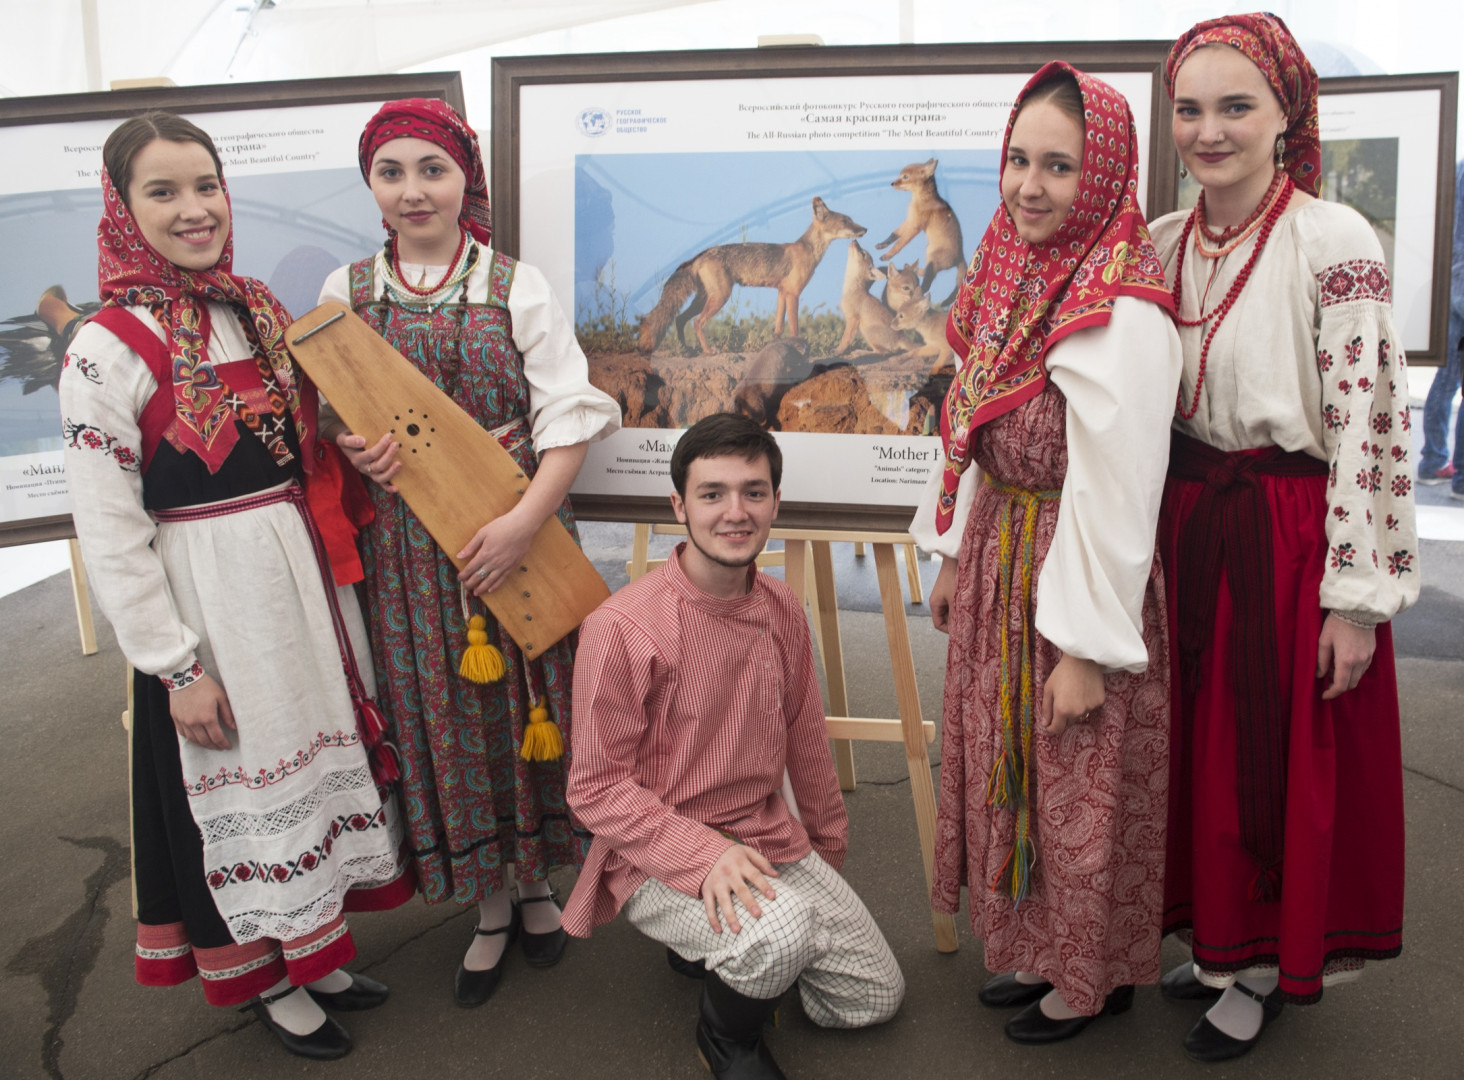 В Московском доме национальностей открылась фотовыставка Русского географического общества